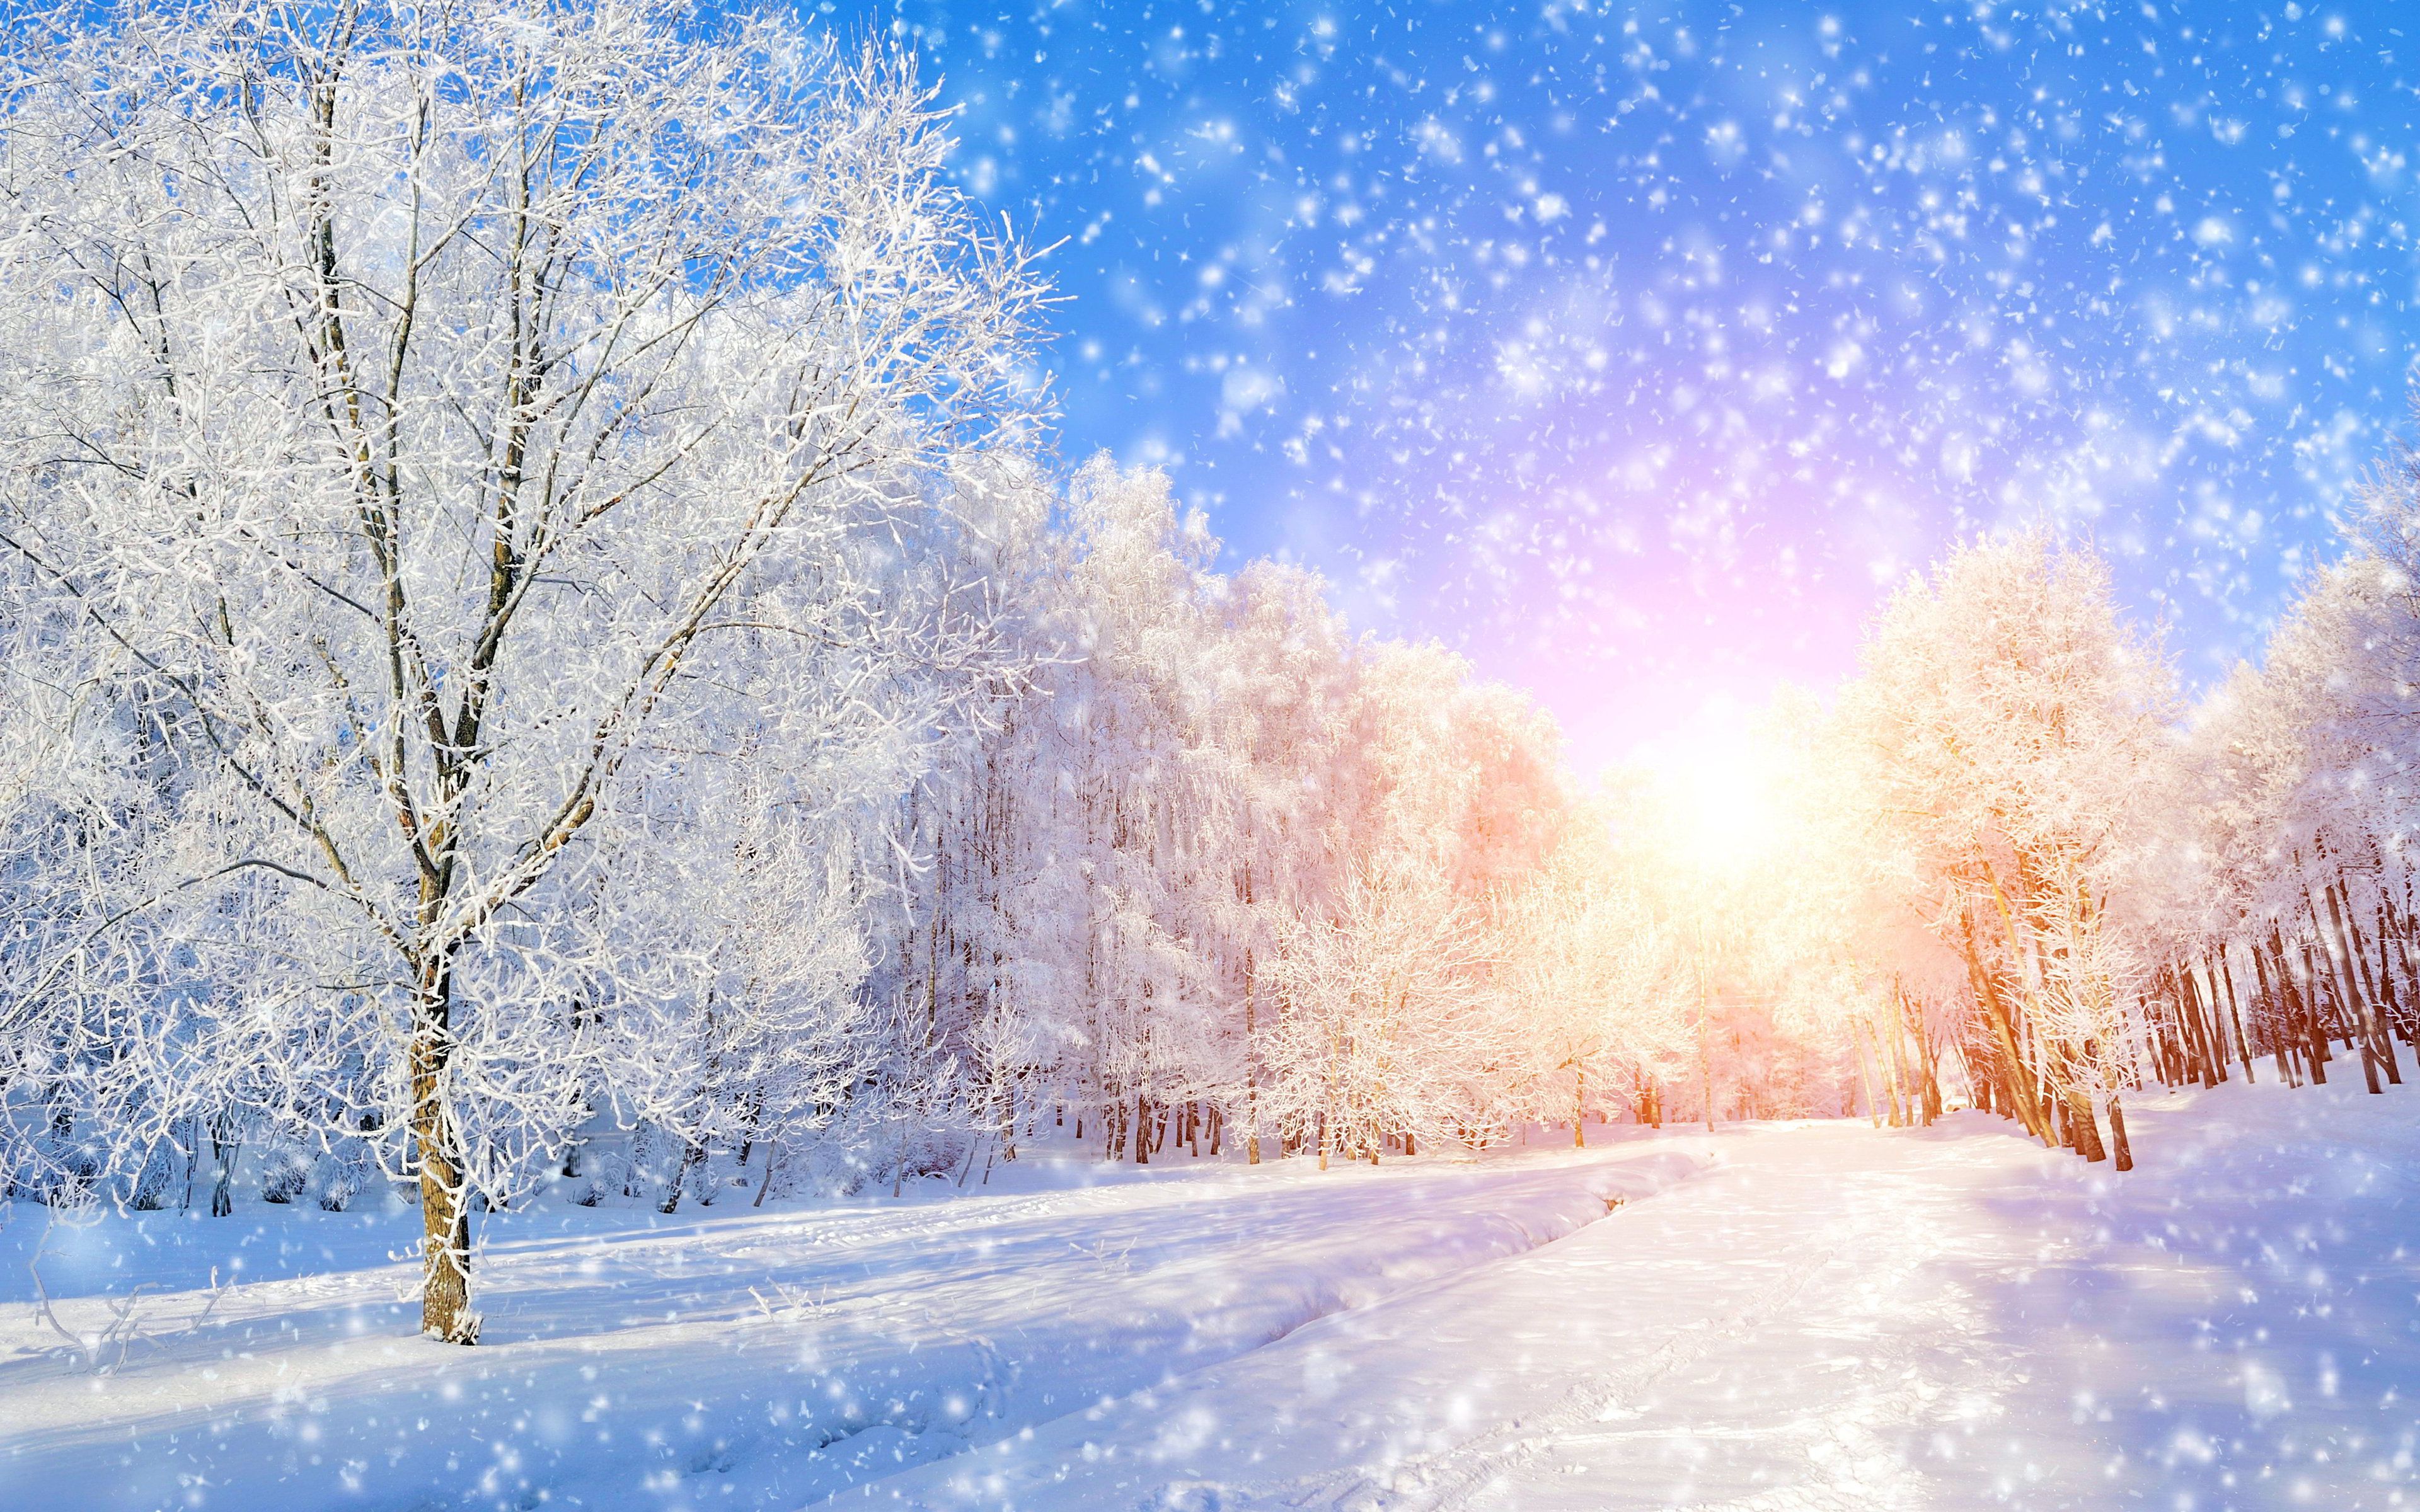 Khi mùa đông đến, hình ảnh tuyết rơi đẹp sẽ mang đến cho bạn cảm giác an nhiên, yên tĩnh. Với những bông tuyết trắng xóa, rơi nhẹ từ trên cao, ảnh tuyết rơi đẹp sẽ khiến bạn cảm thấy như mình đang được sống trong một thế giới của tuyết rơi.